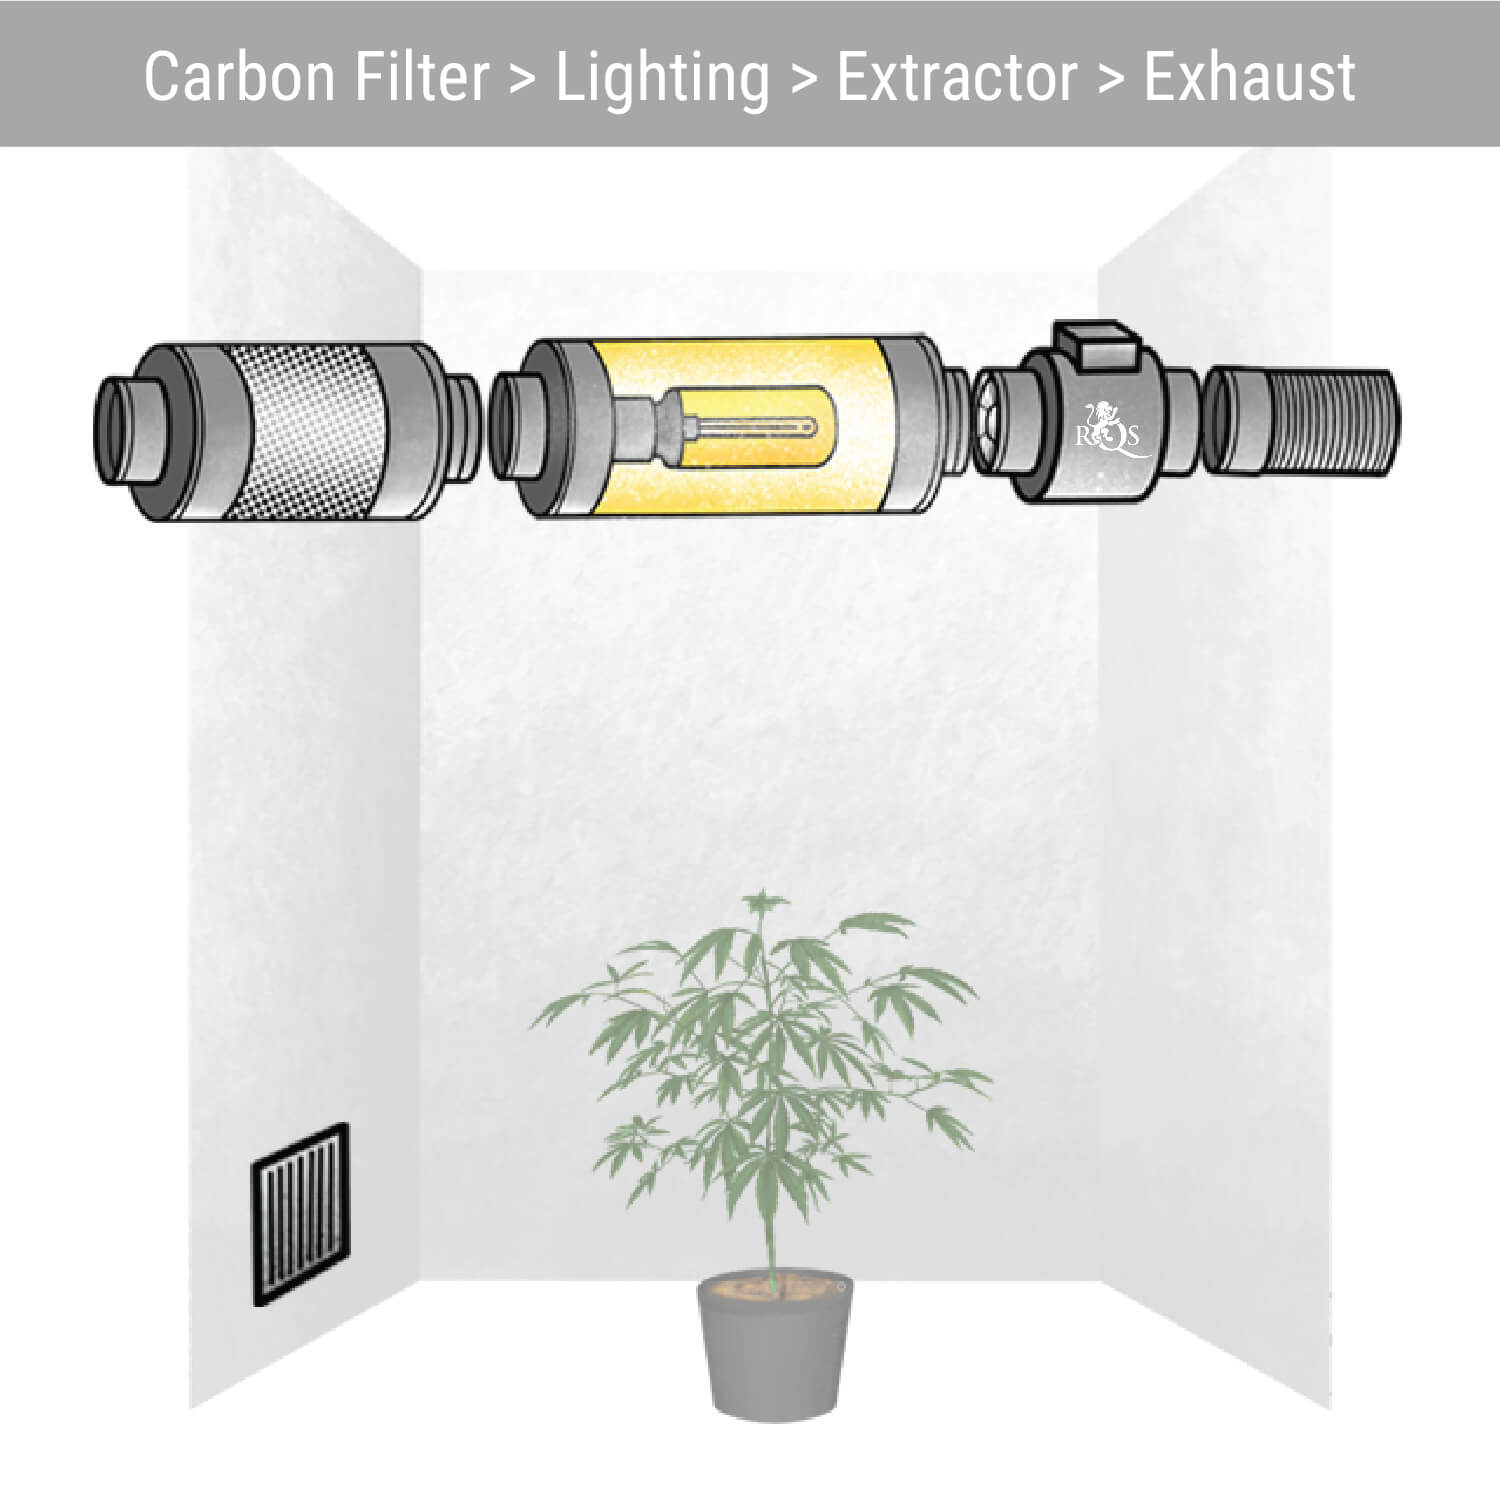 Carbon Filter > Lighting > Extractor > Exhaust